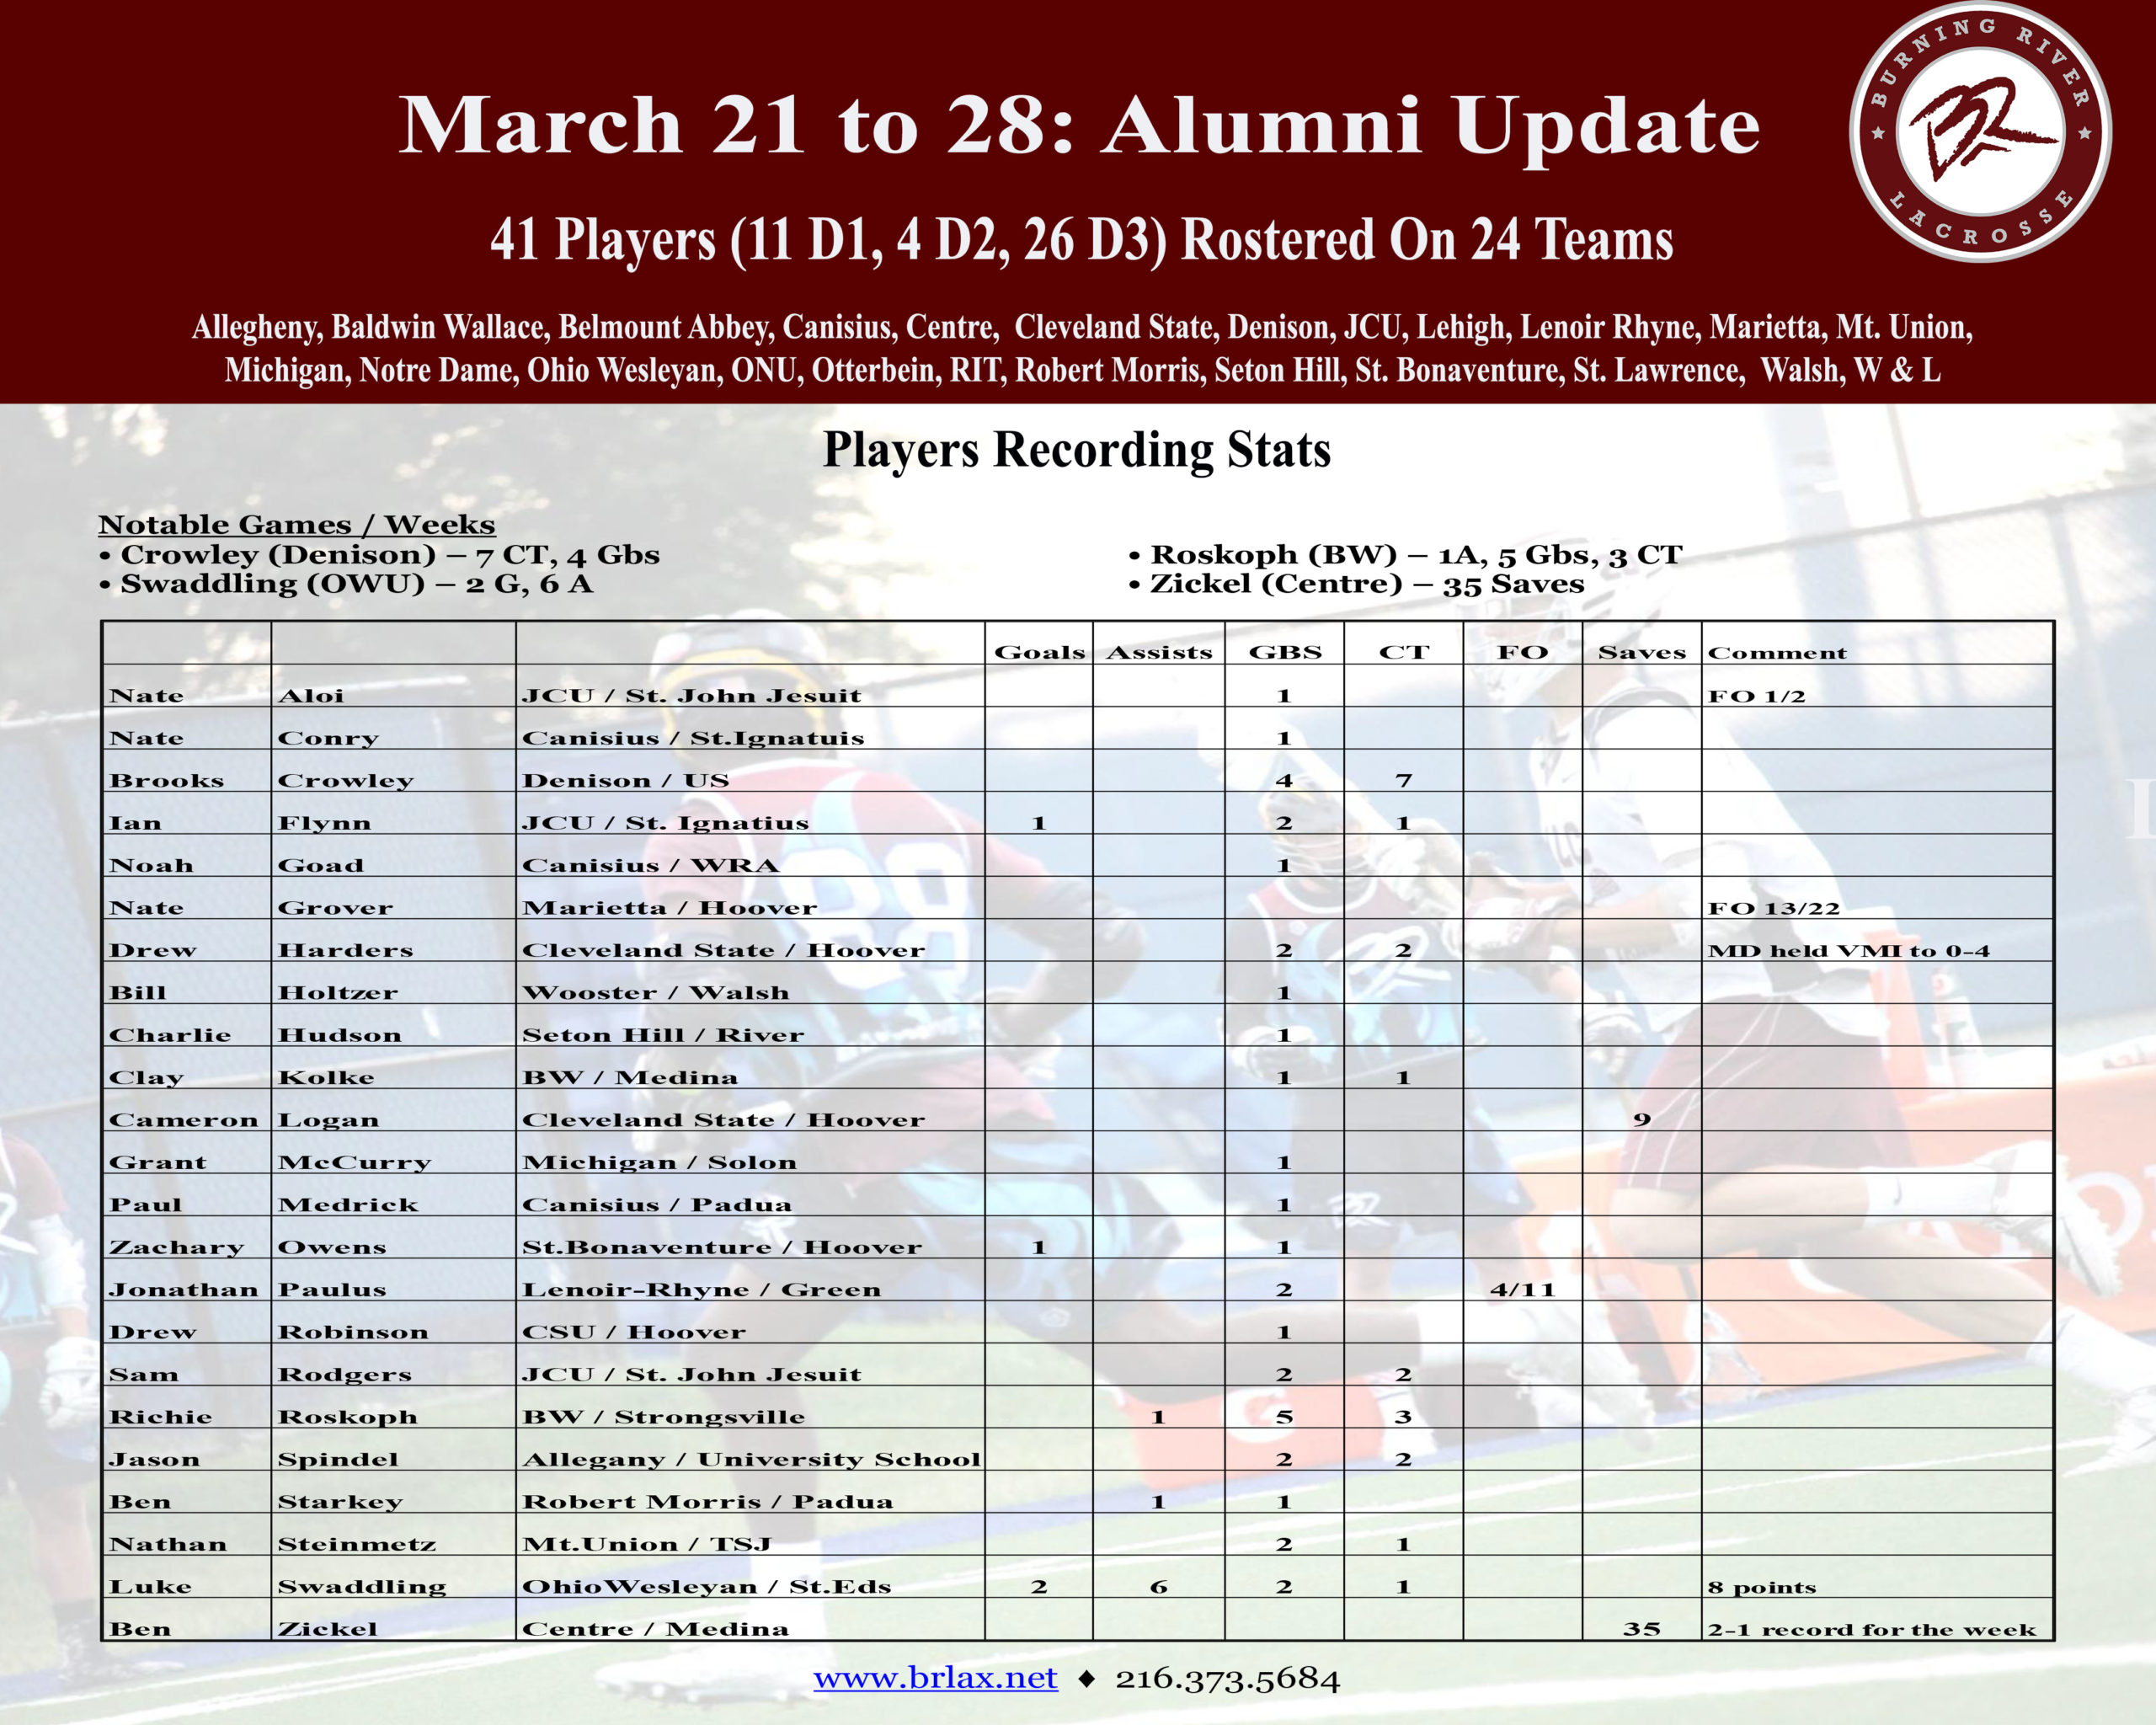 March 28, 2022 Alumni Update